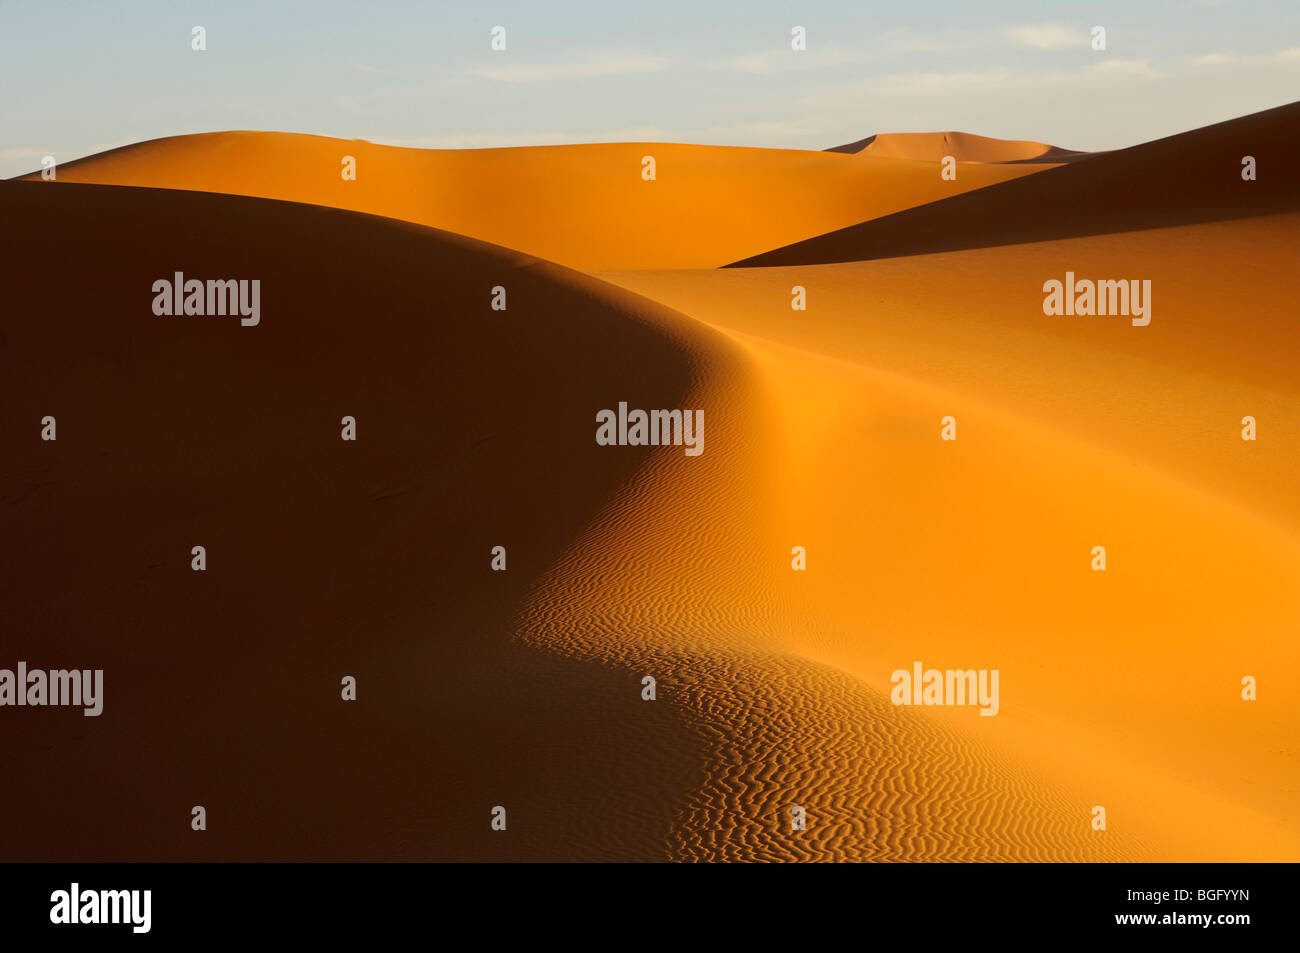 Light and shadows in the sand dunes of Erg Muzurq, Sahara desert, Libya Stock Photo